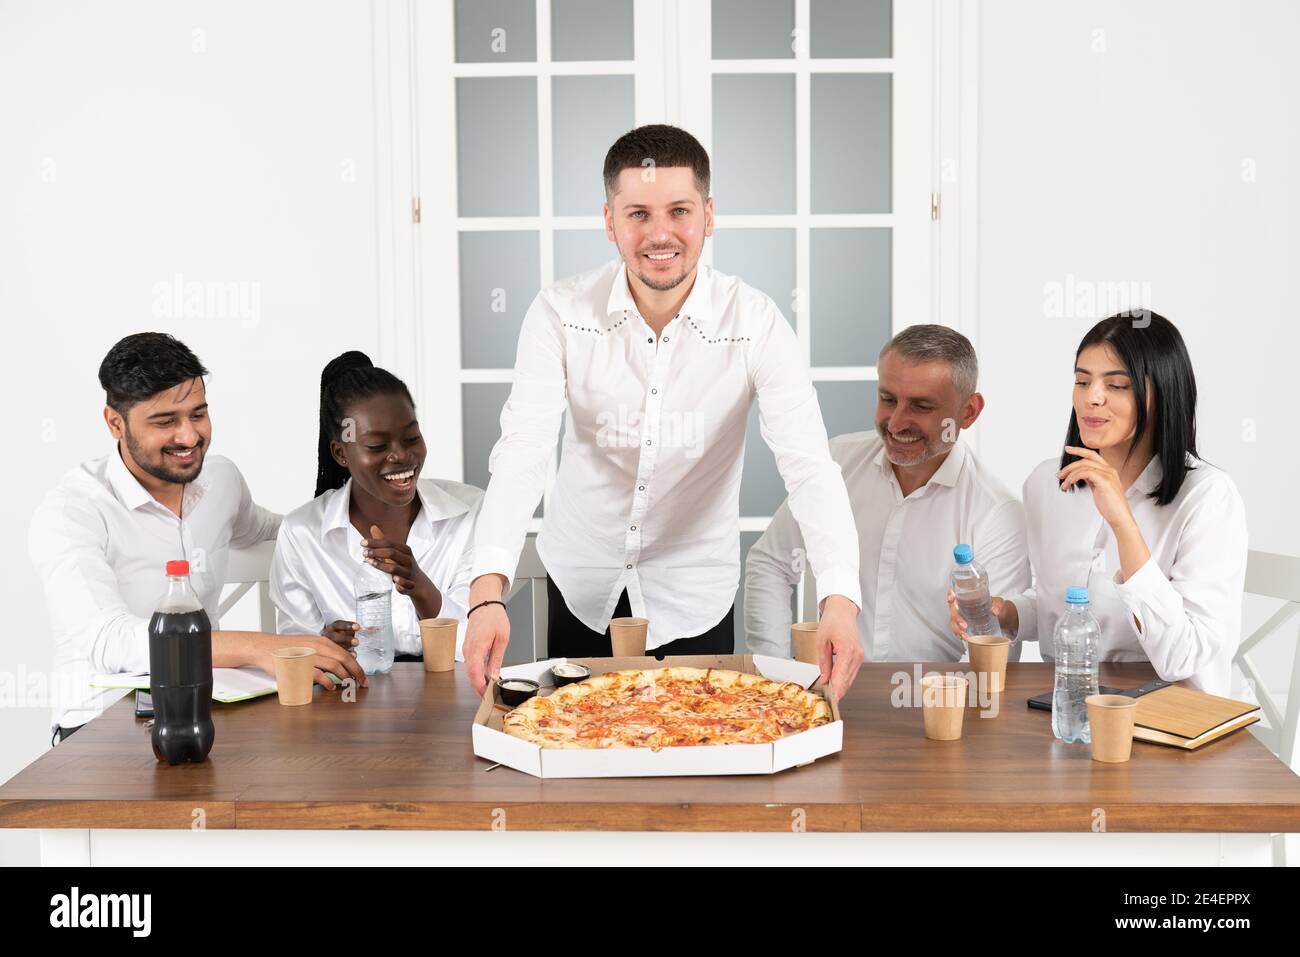 Il team aziendale mangia la pizza in ufficio seduto intorno al tavolo. I dipendenti dell'azienda mista si sono incontrati al tavolo dell'ufficio con un'insoddisfazione Foto Stock